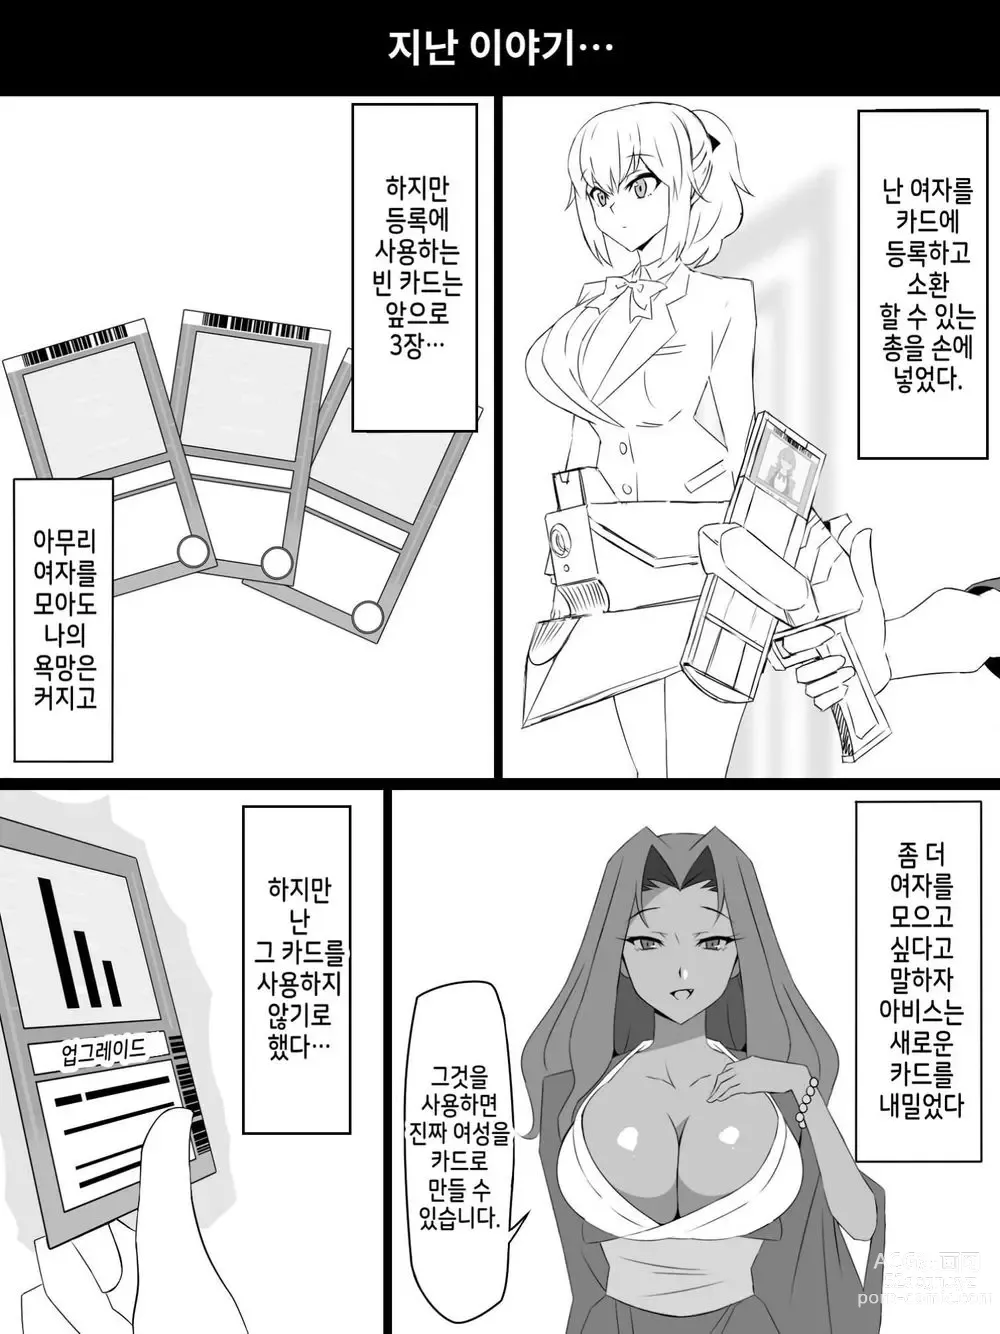 Page 2 of doujinshi Shoukanjuu DX DeliHealizer